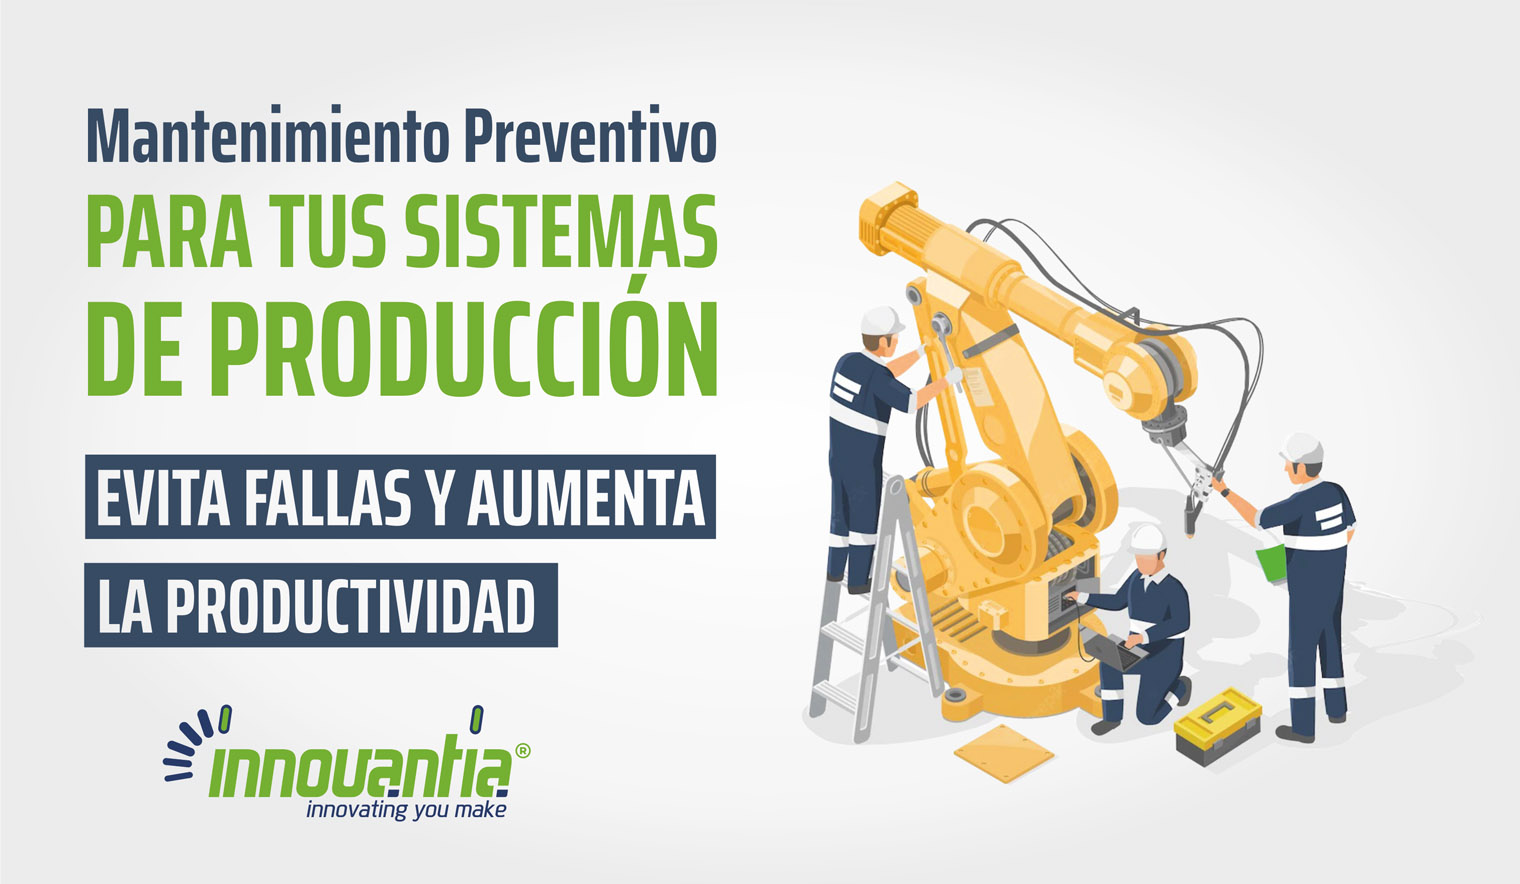 Mantenimiento preventivo para tus sistemas de produccion - Mantenimiento preventivo para tus sistemas de producción: evita fallas y aumenta la productividad